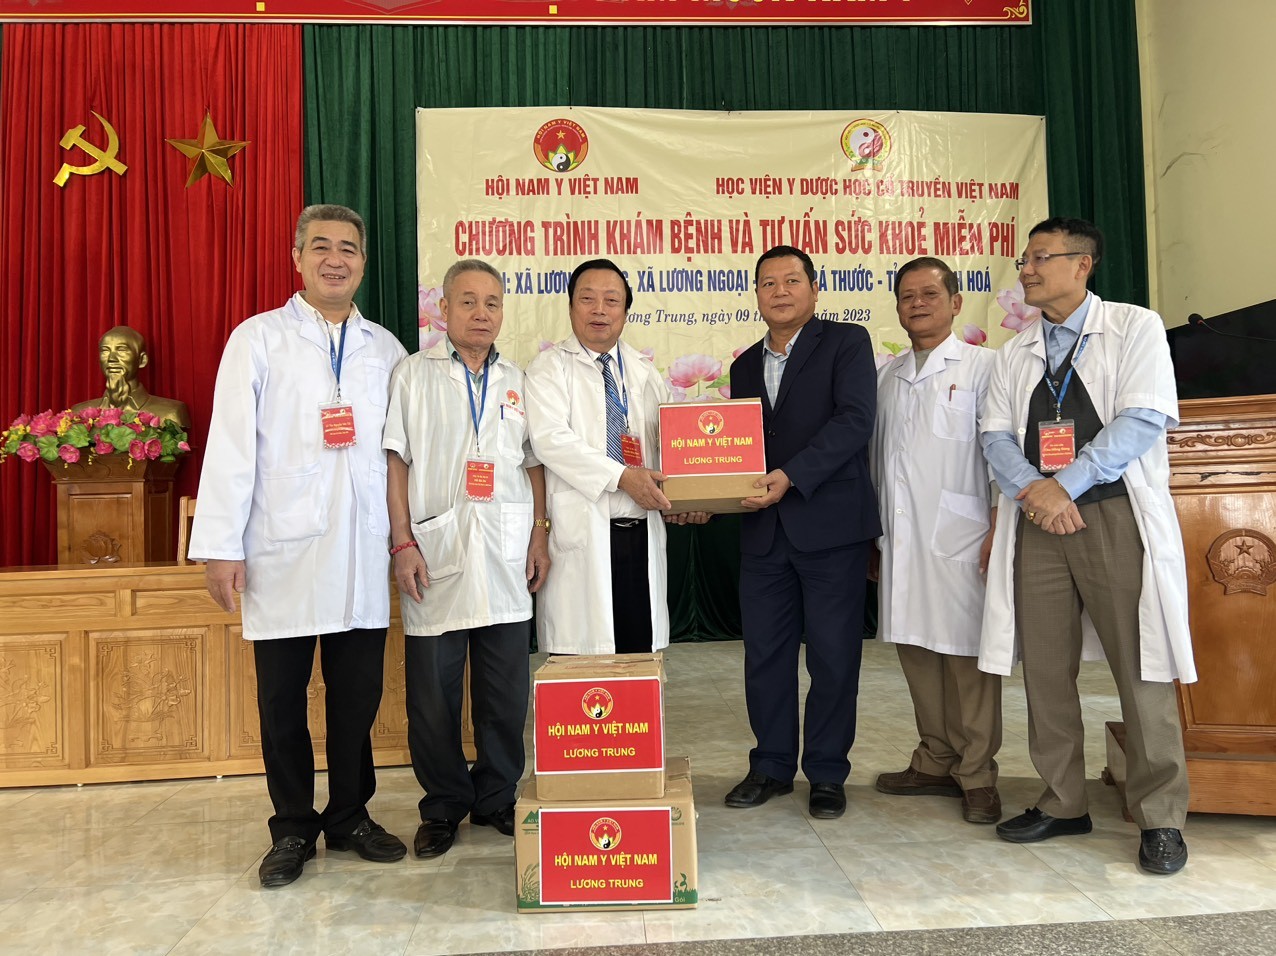 Hội Nam Y Việt Nam khám bệnh và tư vấn sức khoẻ miễn phí cho gần 600 người dân có hoàn cảnh khó khăn tại huyện Bá Thước